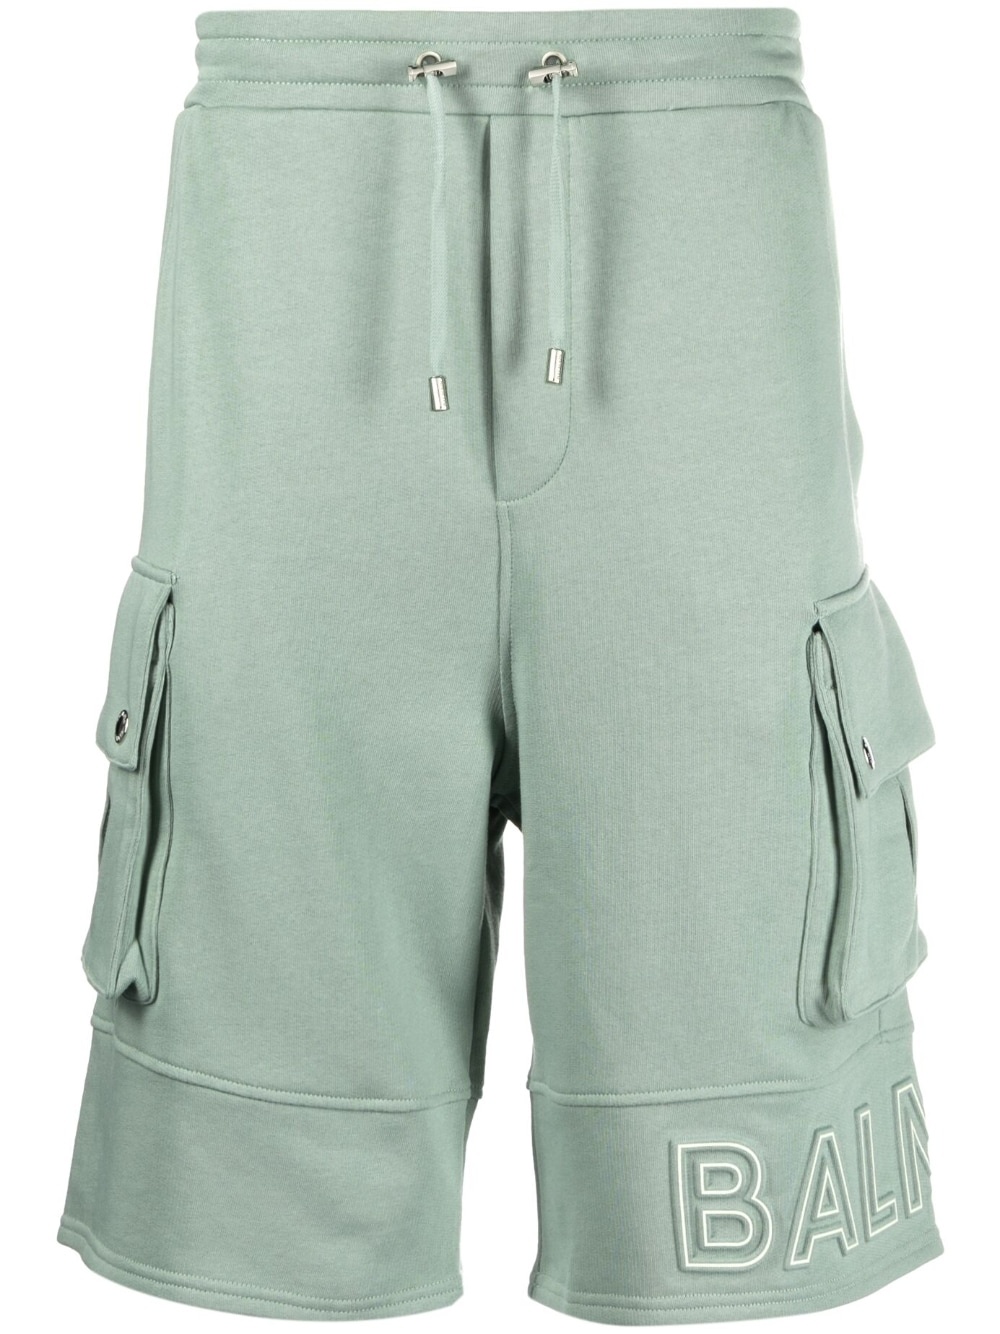 embossed-logo cotton bermuda shorts - 1